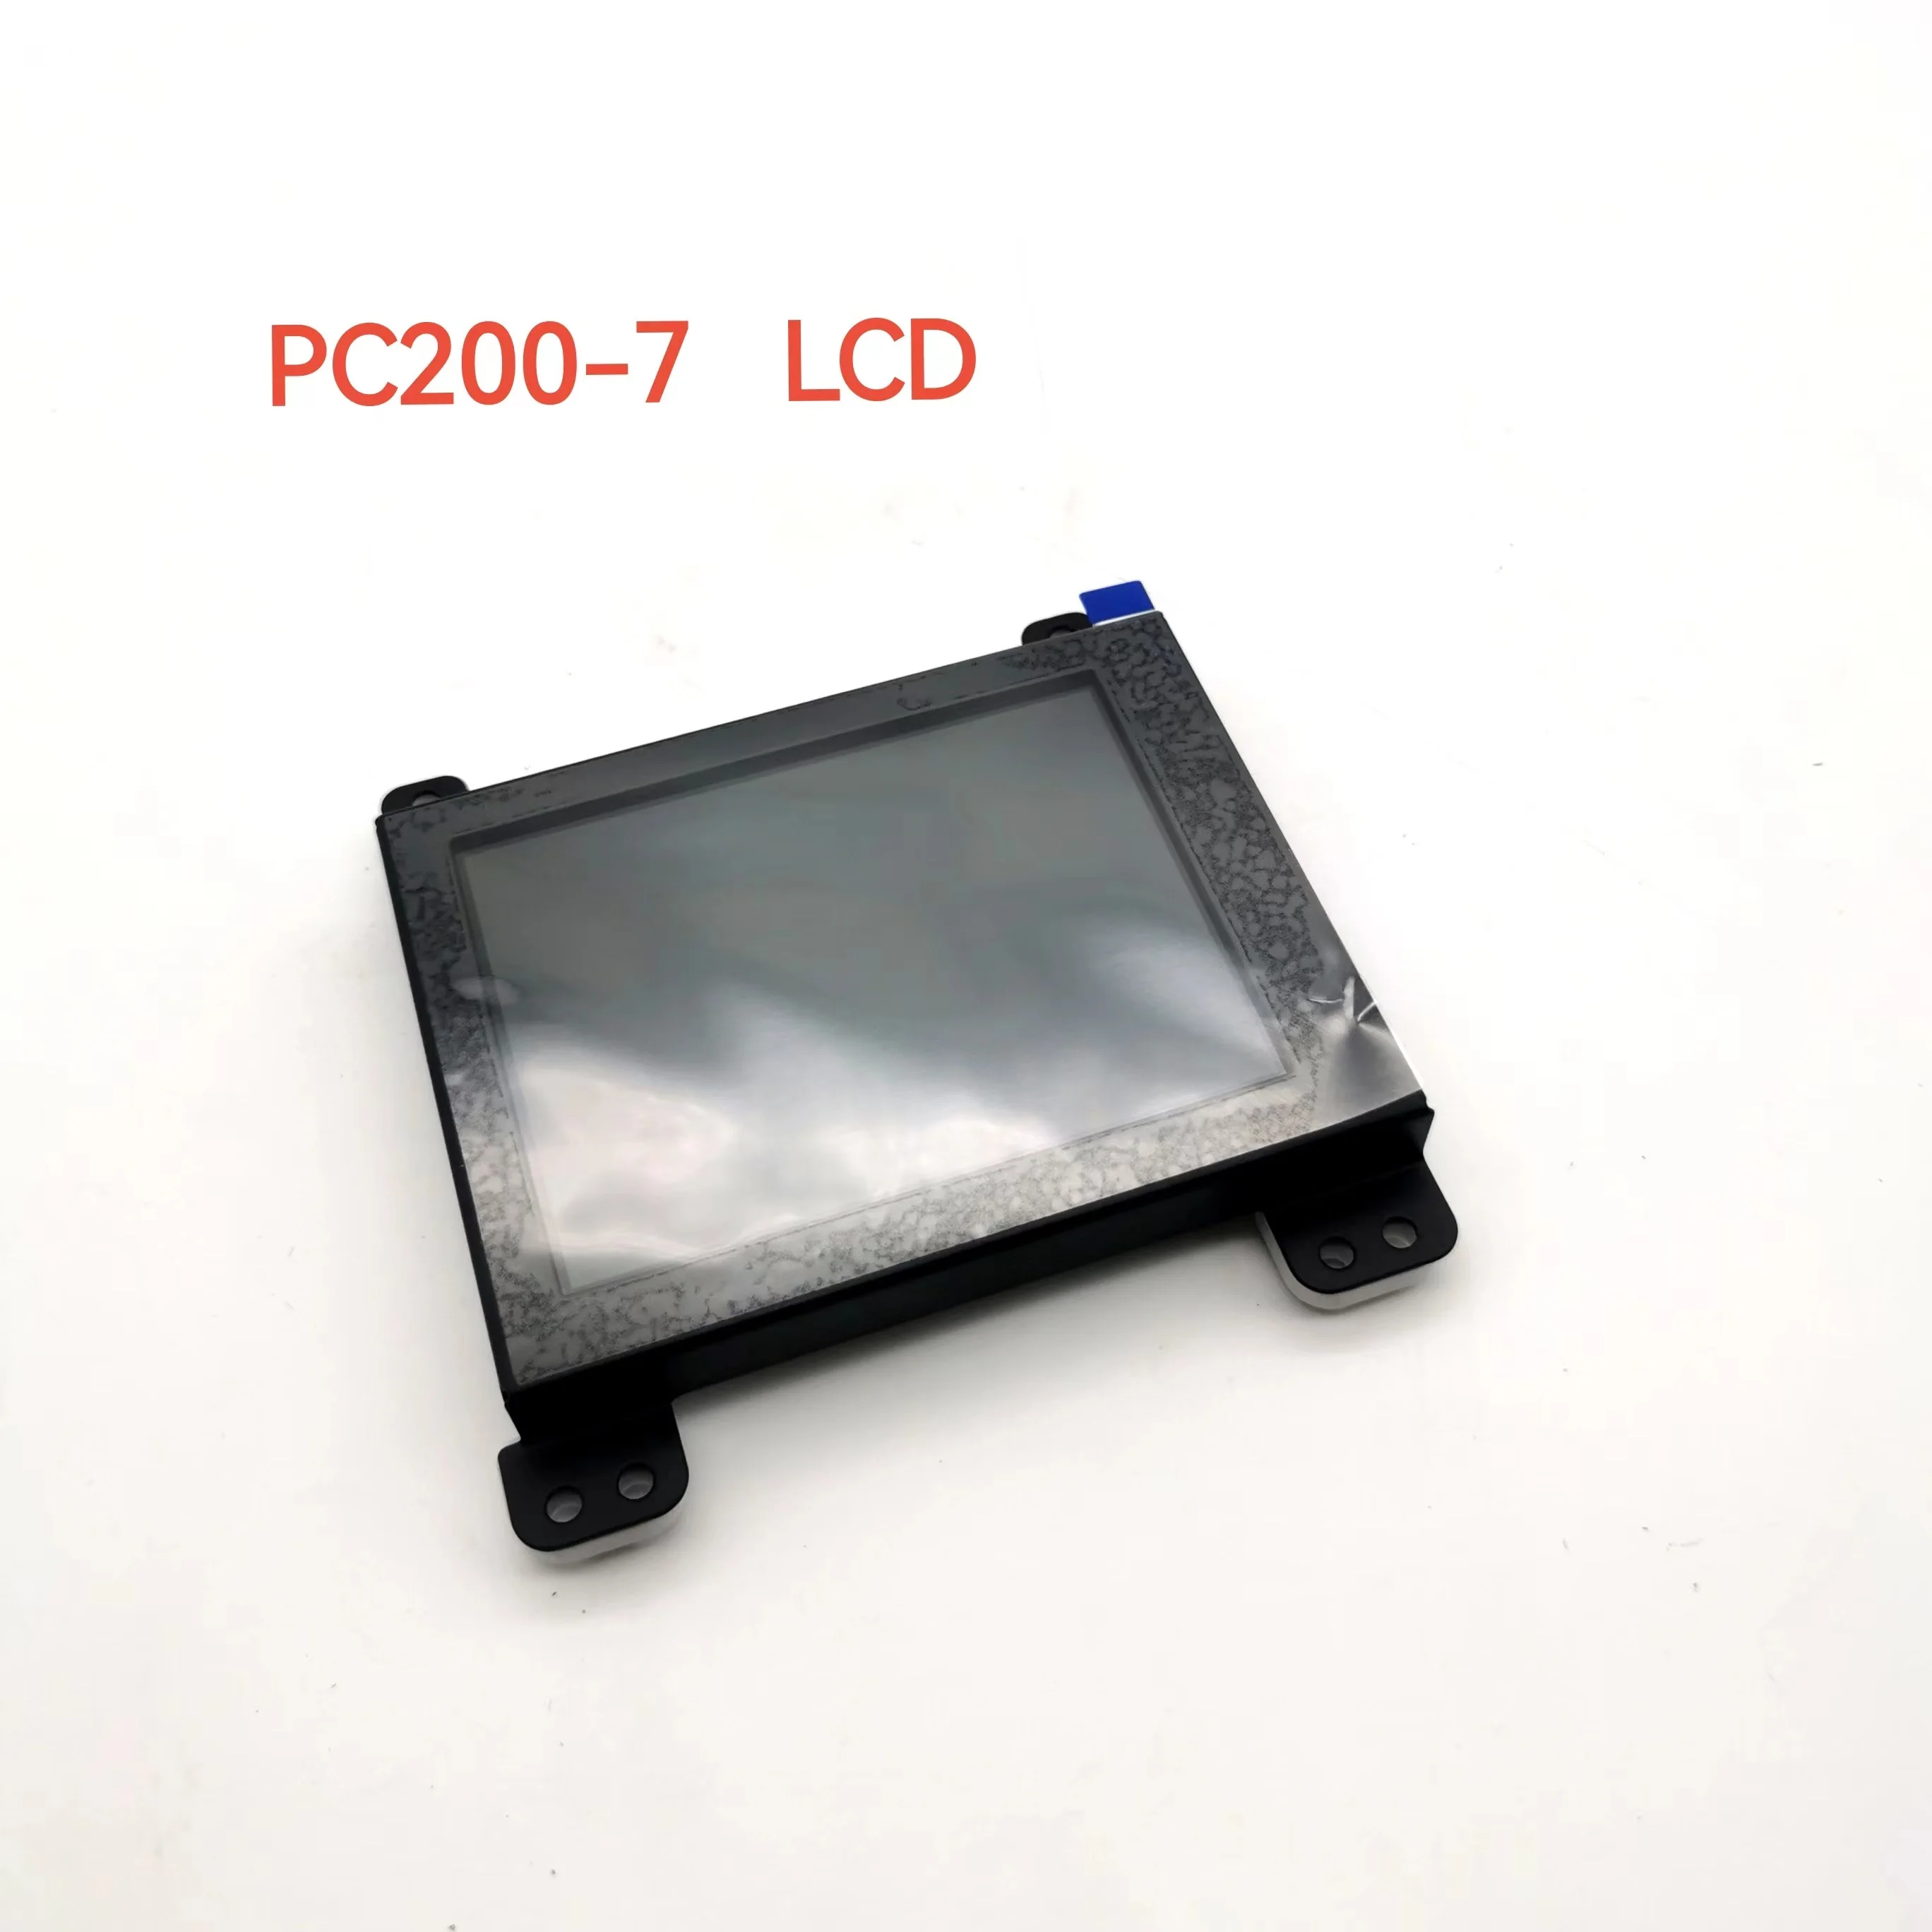 LCD MONITOR komatsu PC200-7 PC210-7 PC220-7 PC270-7 PC300-7 PC360-7 PC450-7